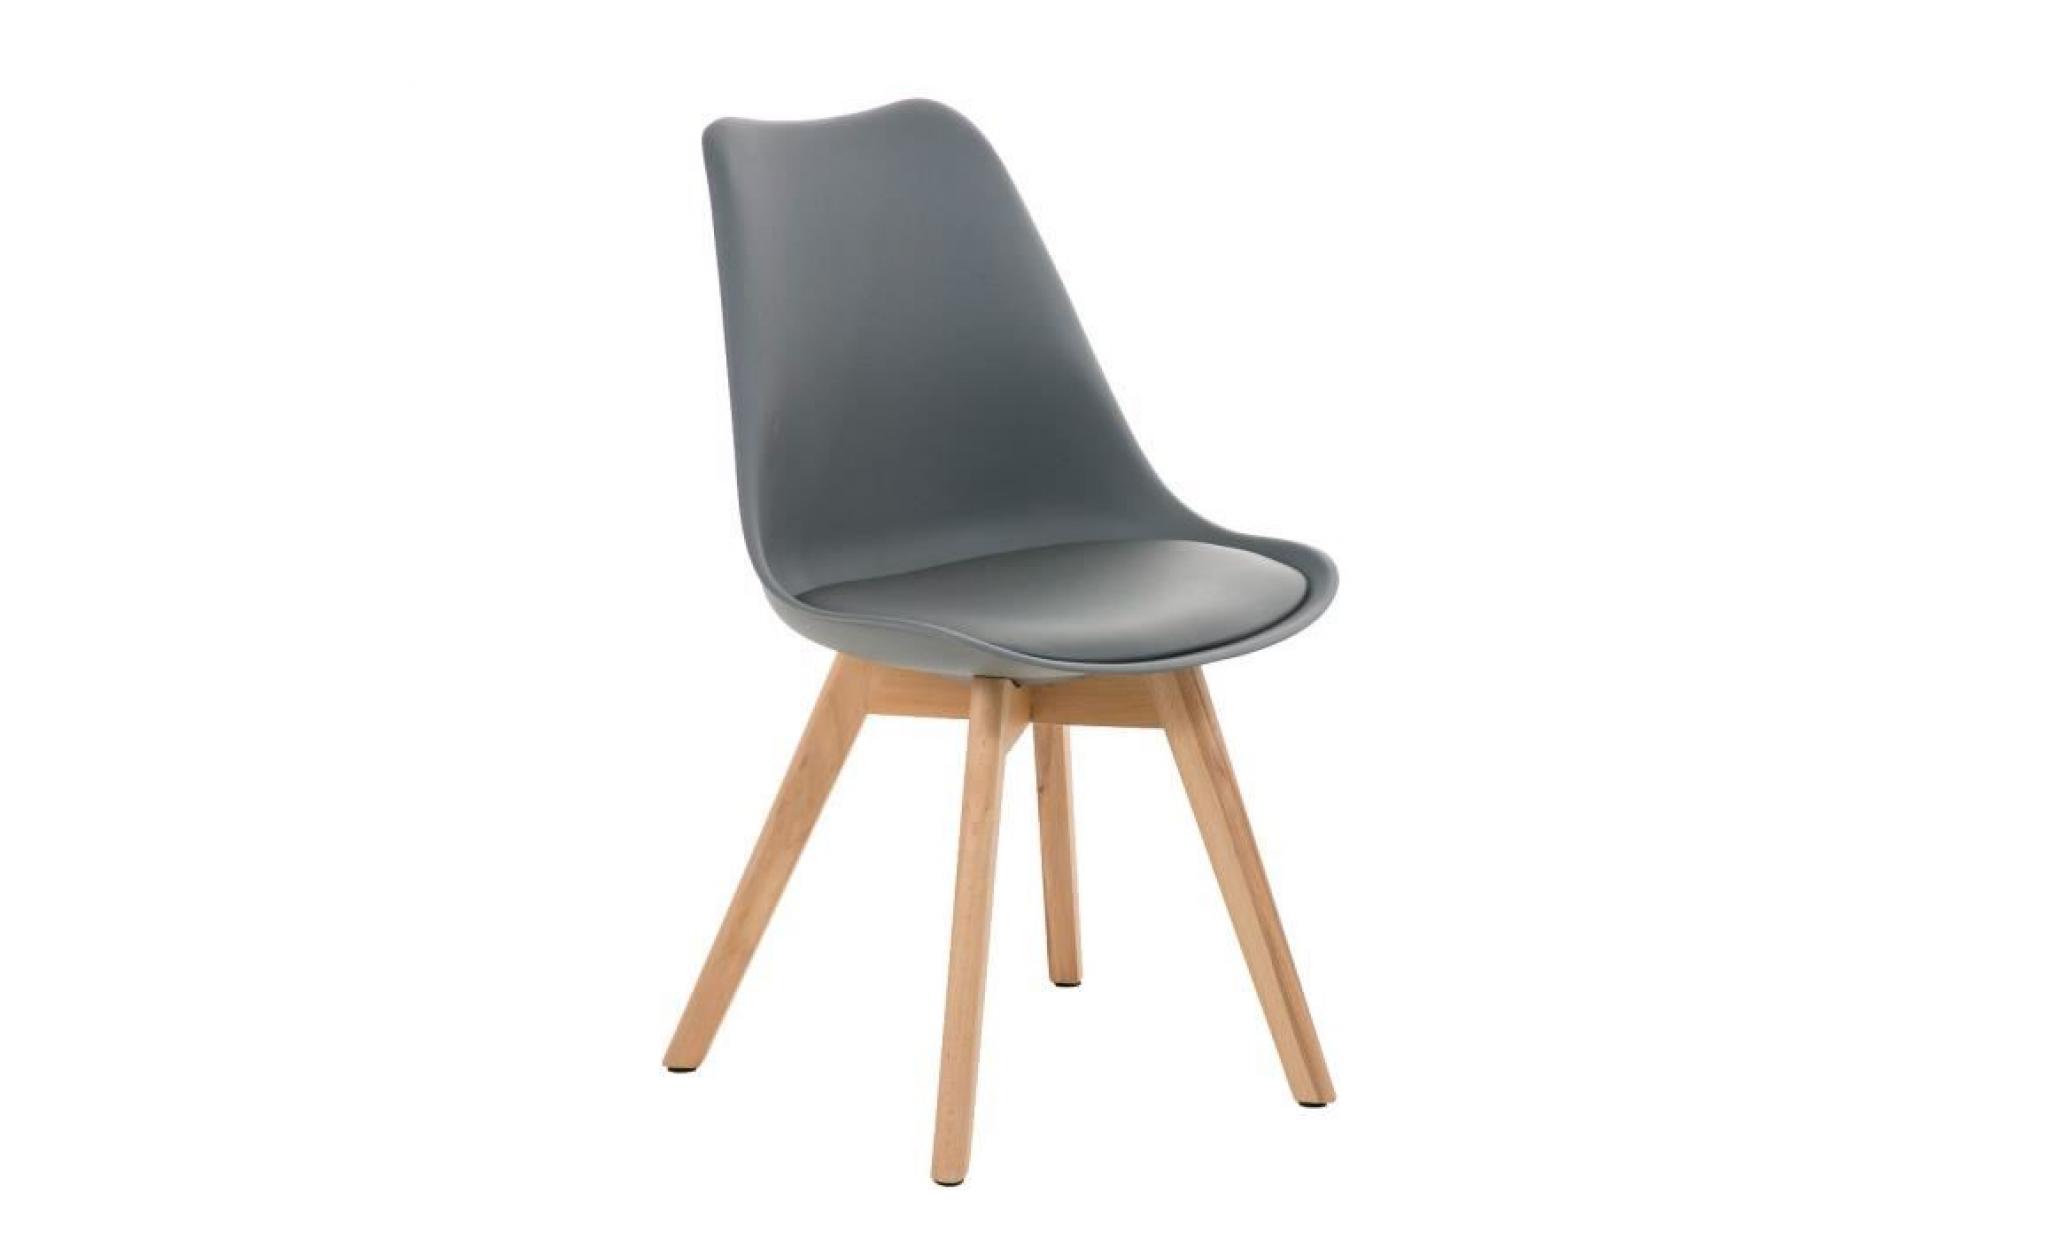 clp chaise de visiteurs de design rétro borneo avec piétement en bois nature, mélange de matériaux en plastique, cuir synthétique...